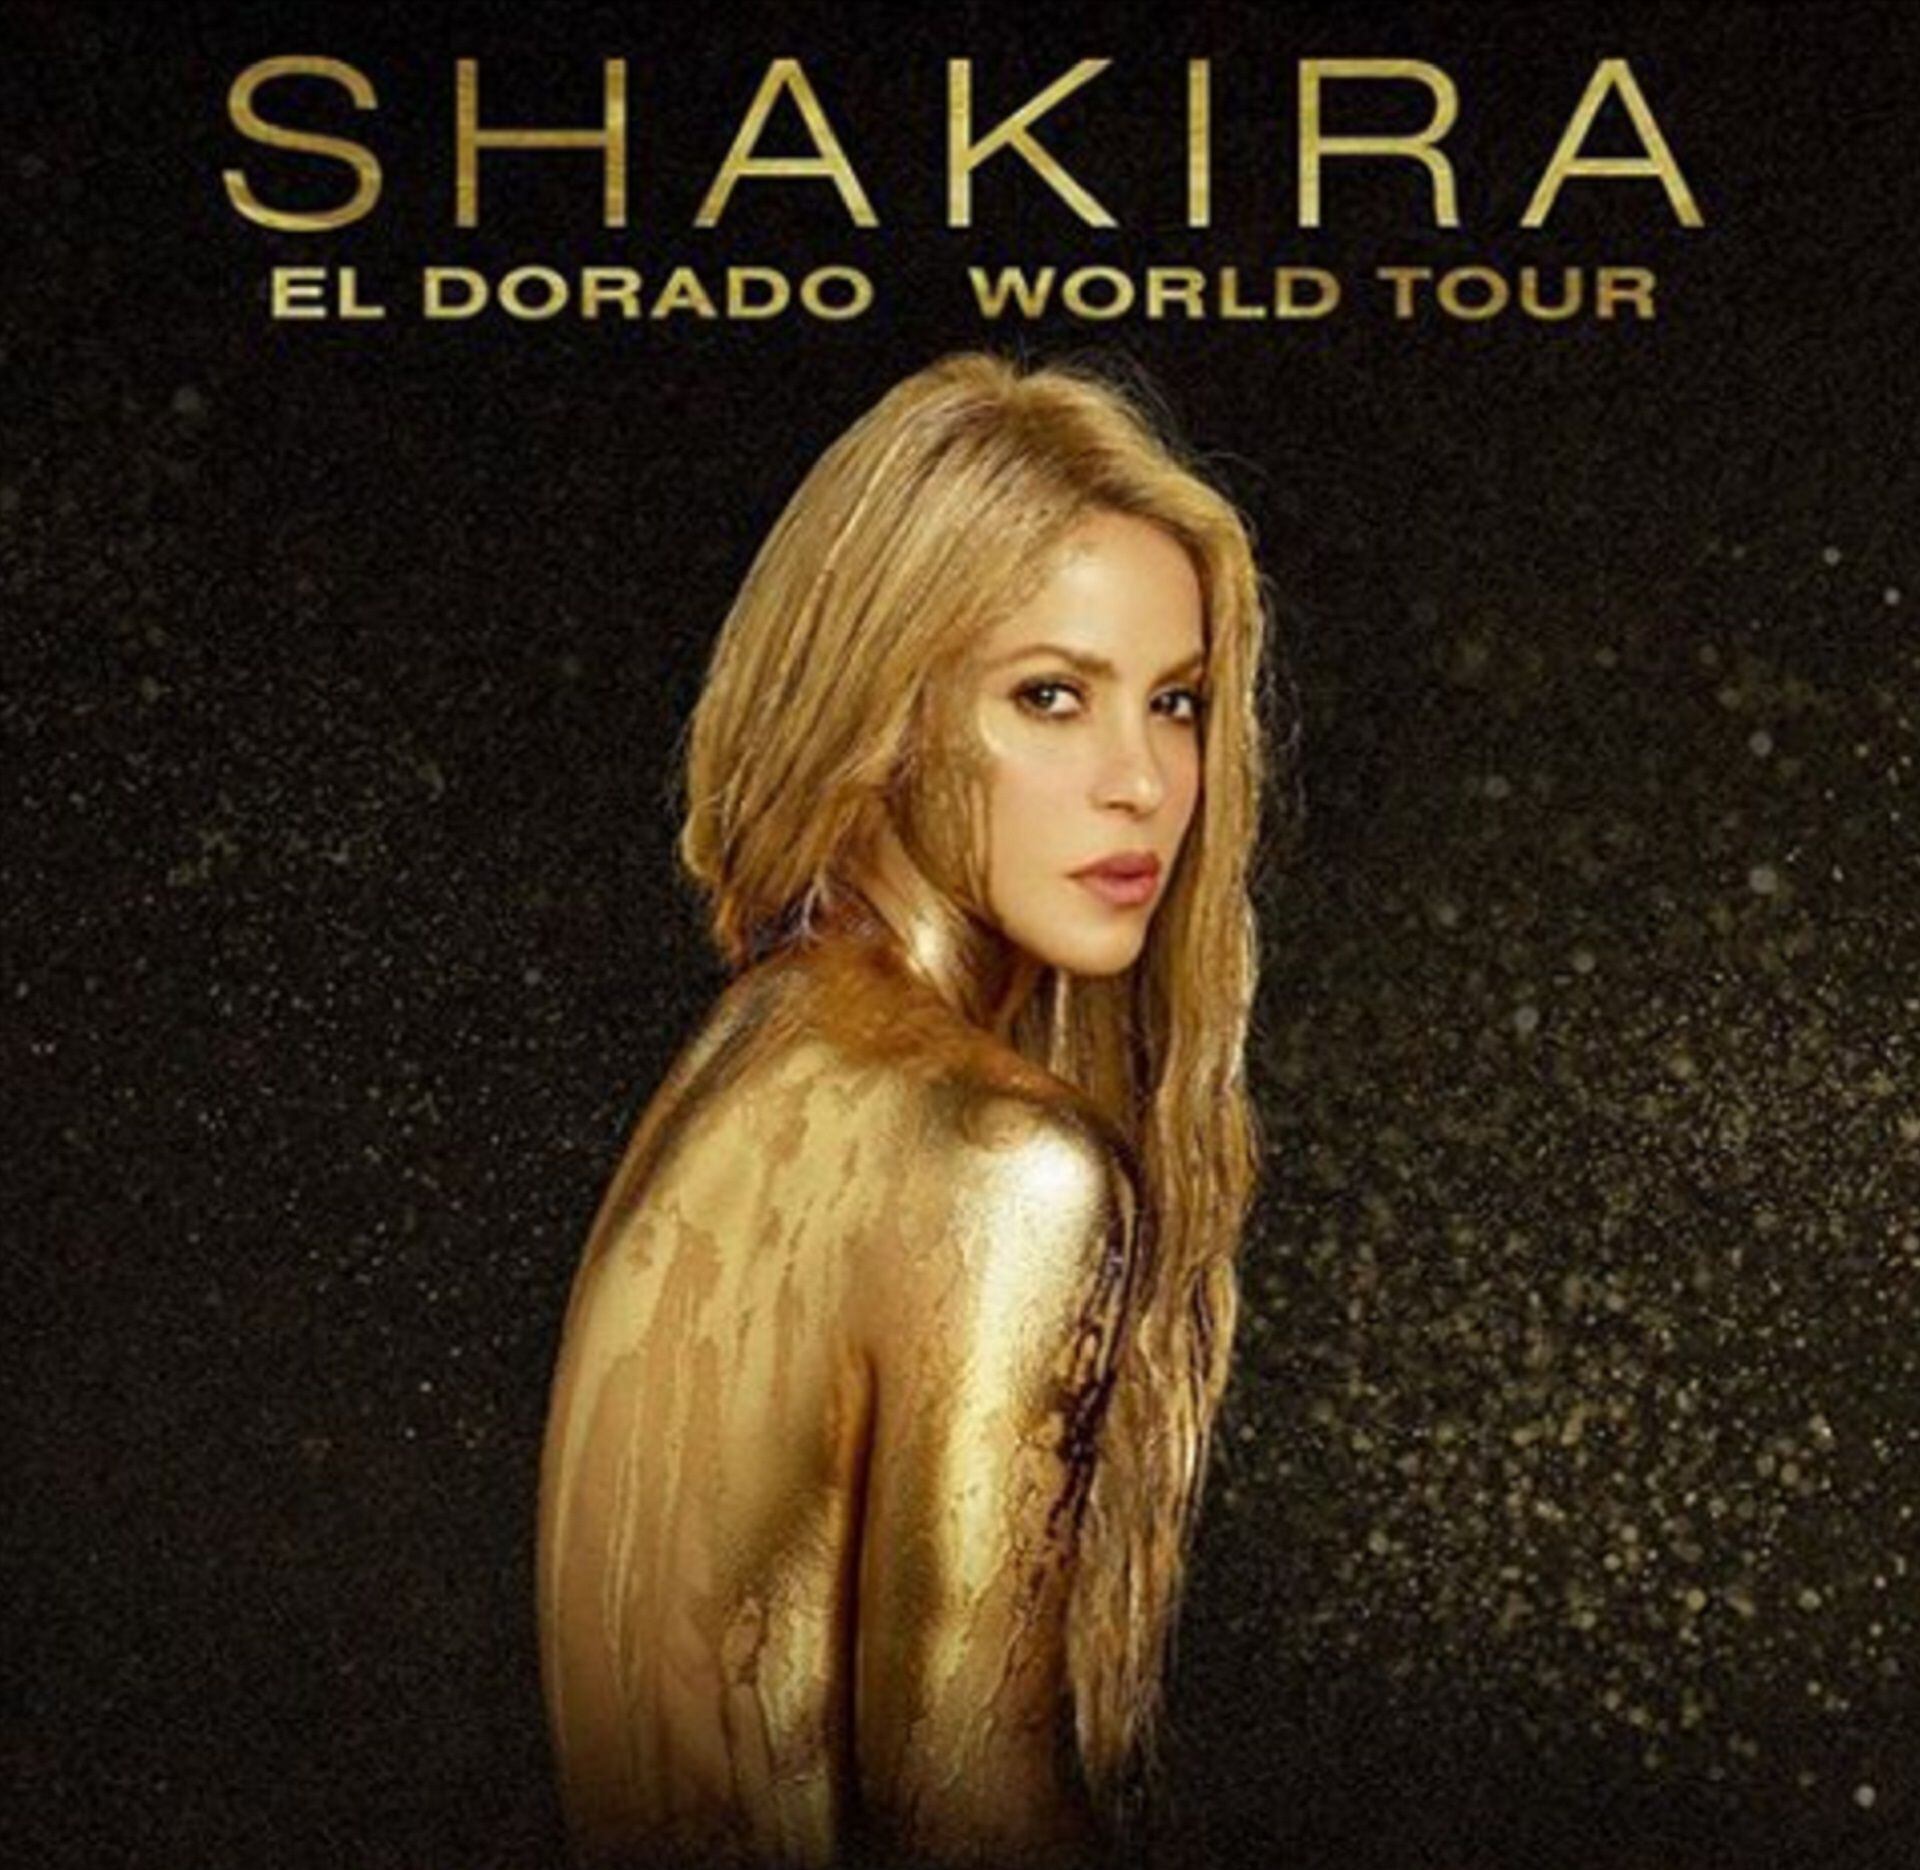 Shakira planeó 'El Dorado Tour' para 2017, pero tuvo que reprogramarlo para 2018 por su salud - crédito Instagram 